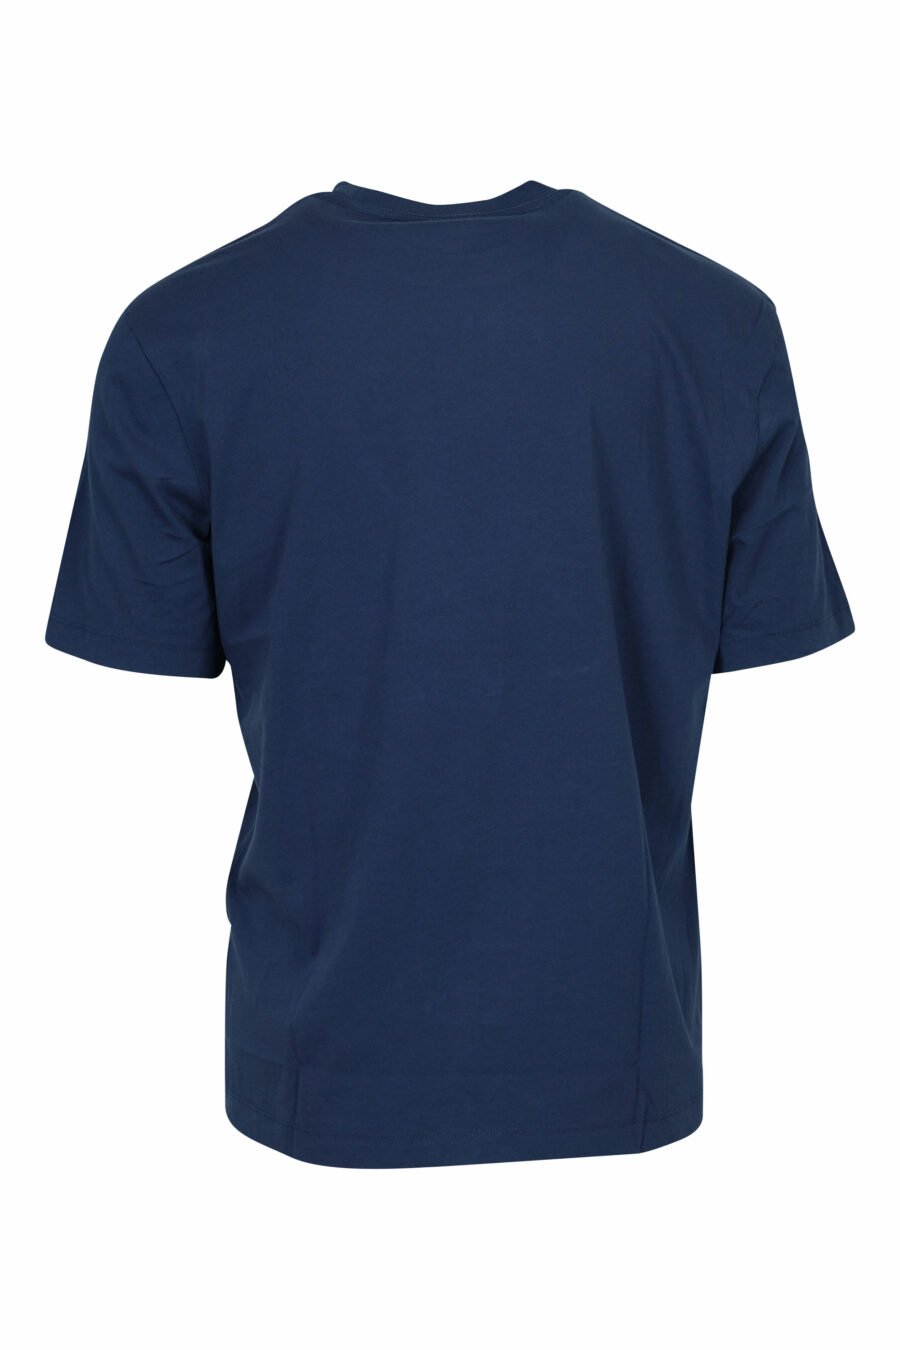 Camiseta azul con minilogo escudo bordado - 8058610829575 2